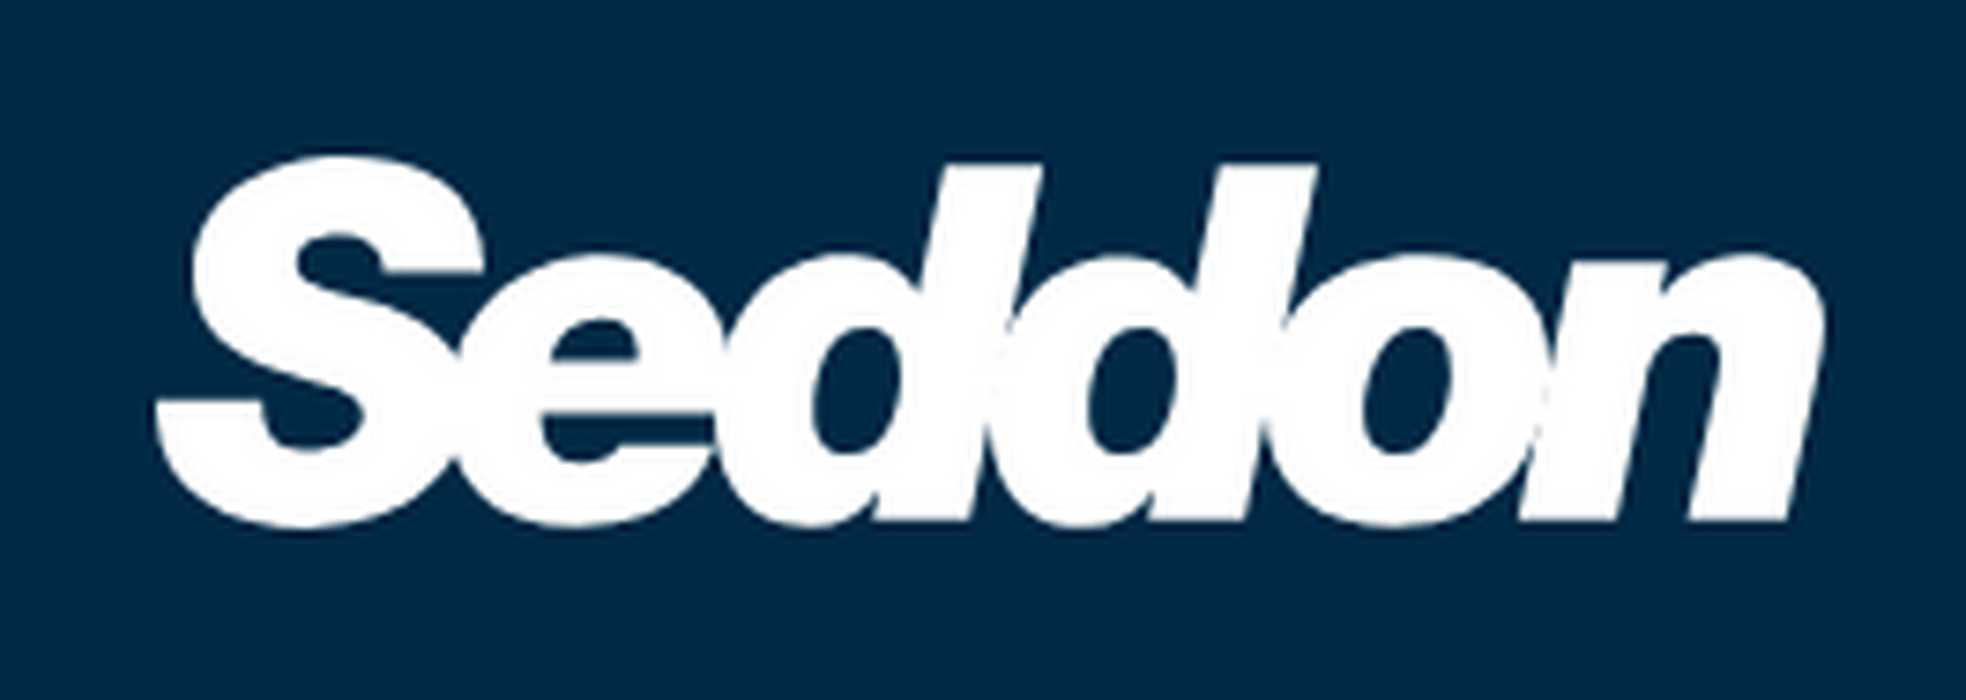 seddon-logo